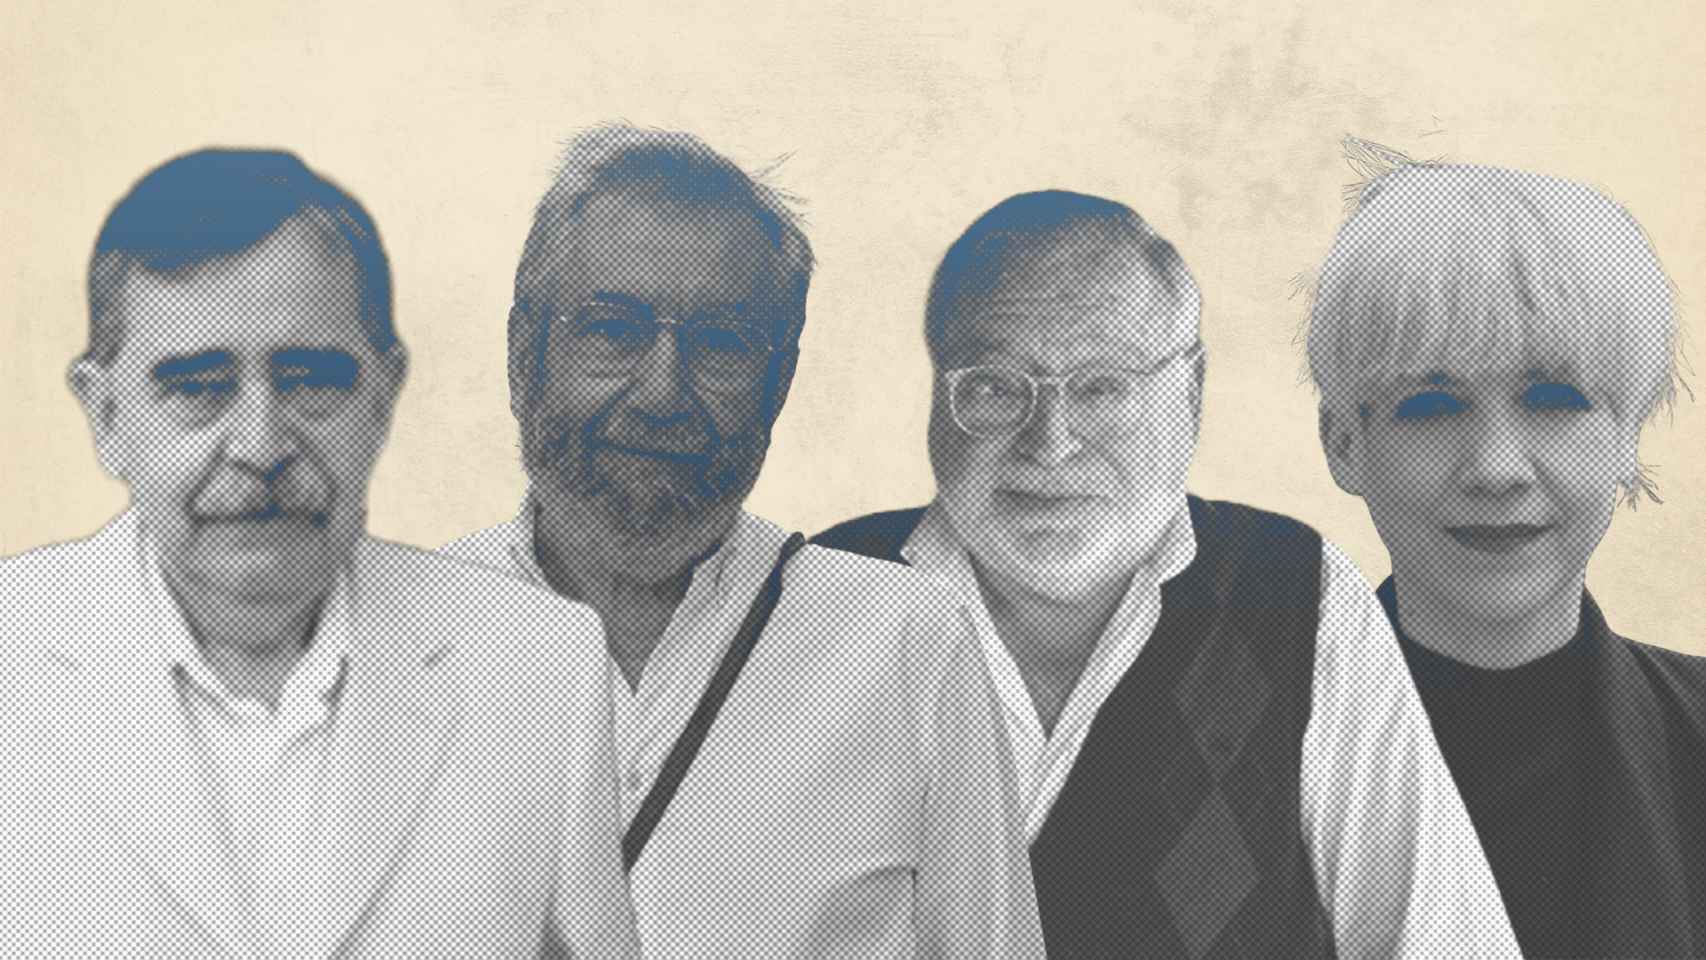 Eugenio Trías, Antonio Muñoz Molina, Fernando Savater y Remedios Zafra han firmado algunos de los mejores ensayos de los últimos 25 años.